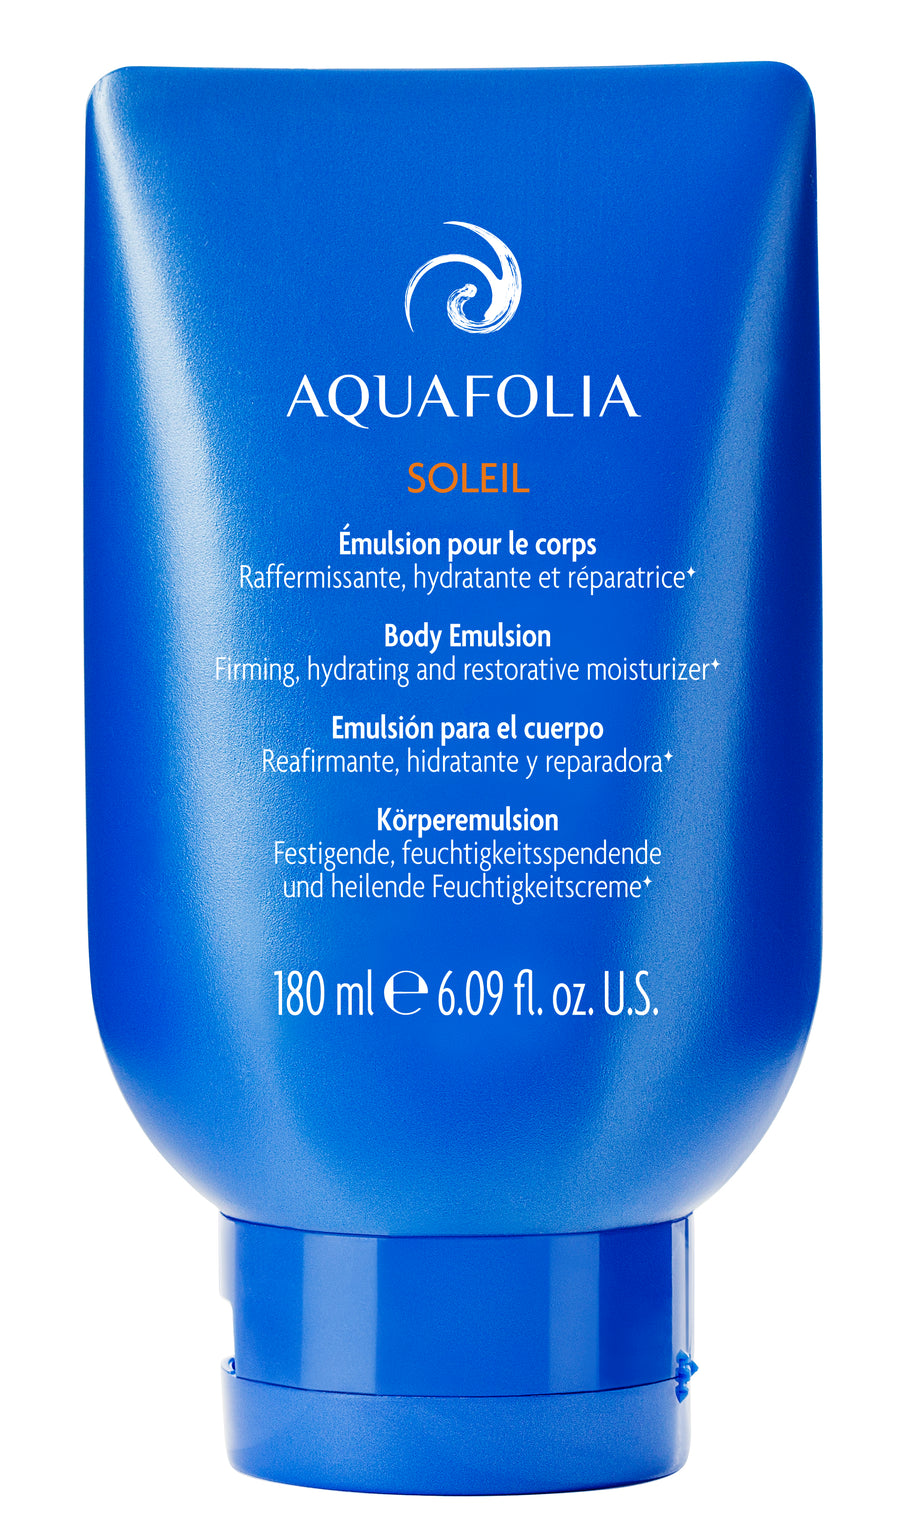 Aquafolia- Émulsion pour le Corps- Concept Aquafolia SOLEIL